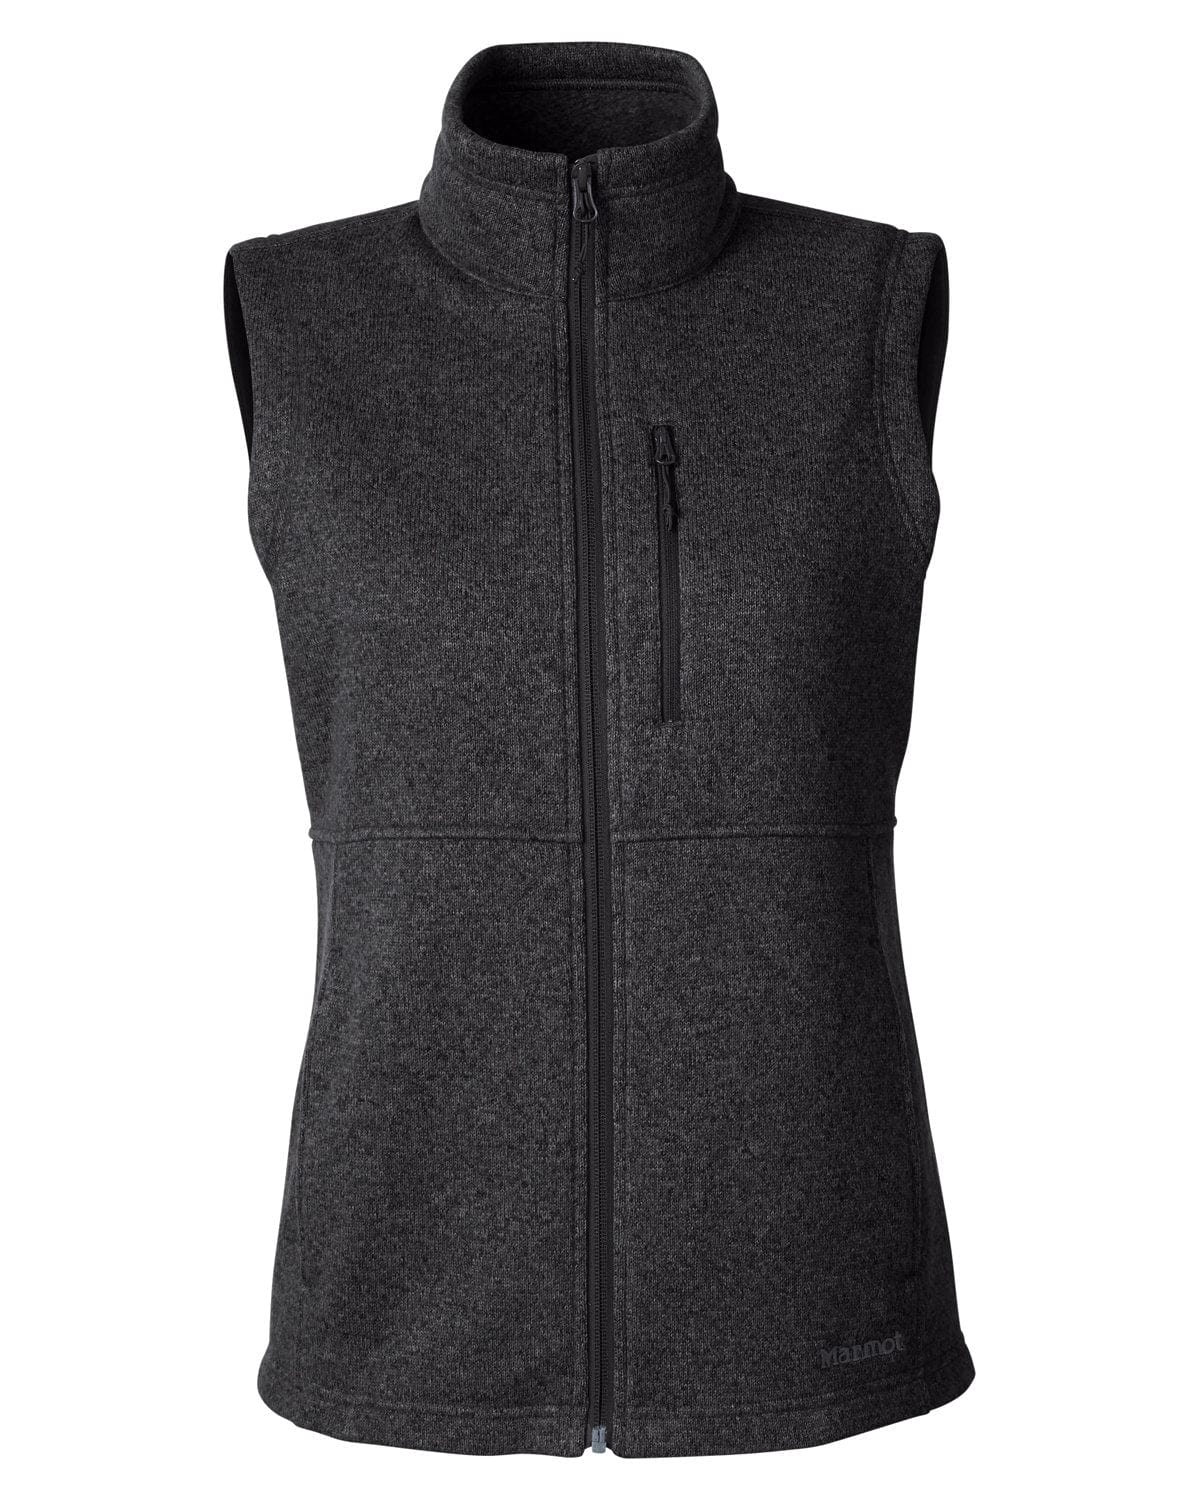 Marmot Outerwear XS / Black Marmot - Women's Dropline Sweater Fleece Vest